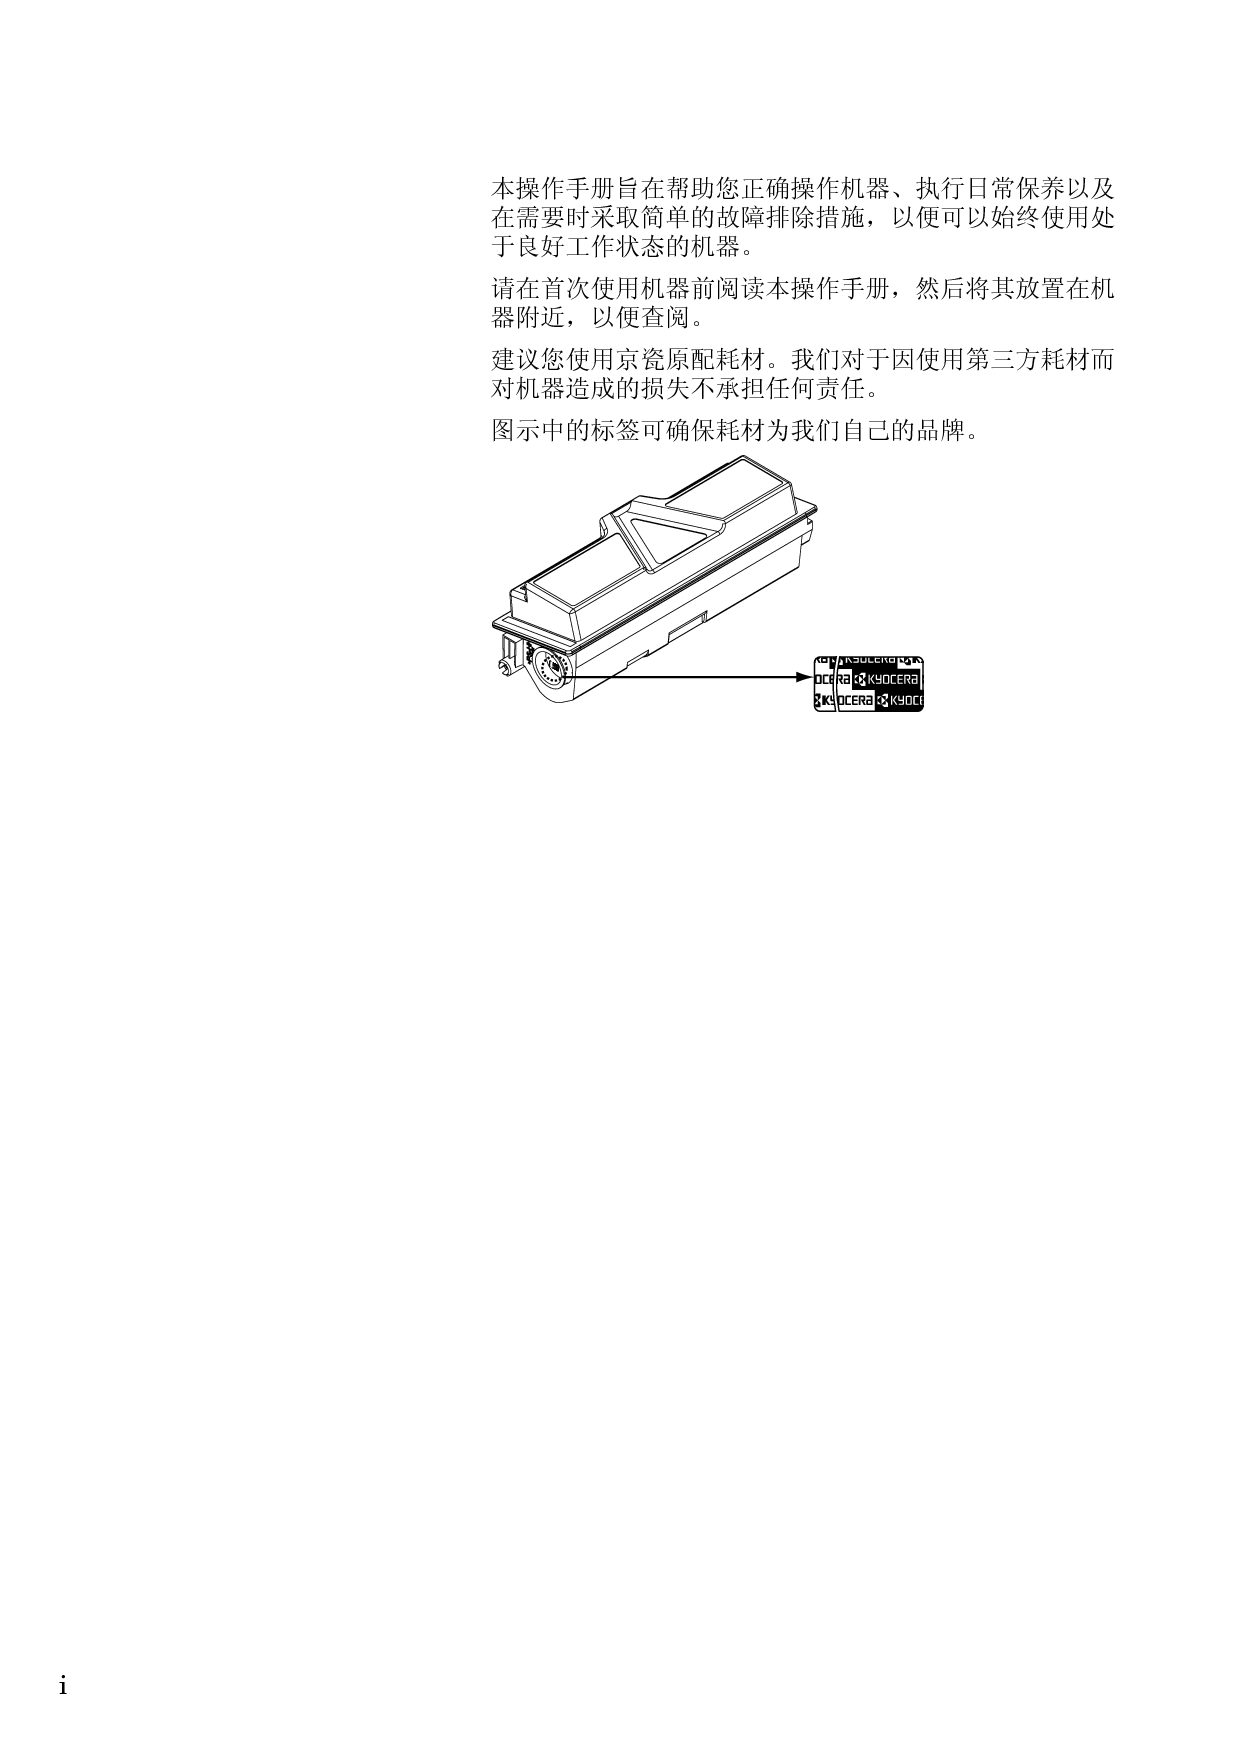 京瓷 Kyocera FS-1320D 操作手册 第1页